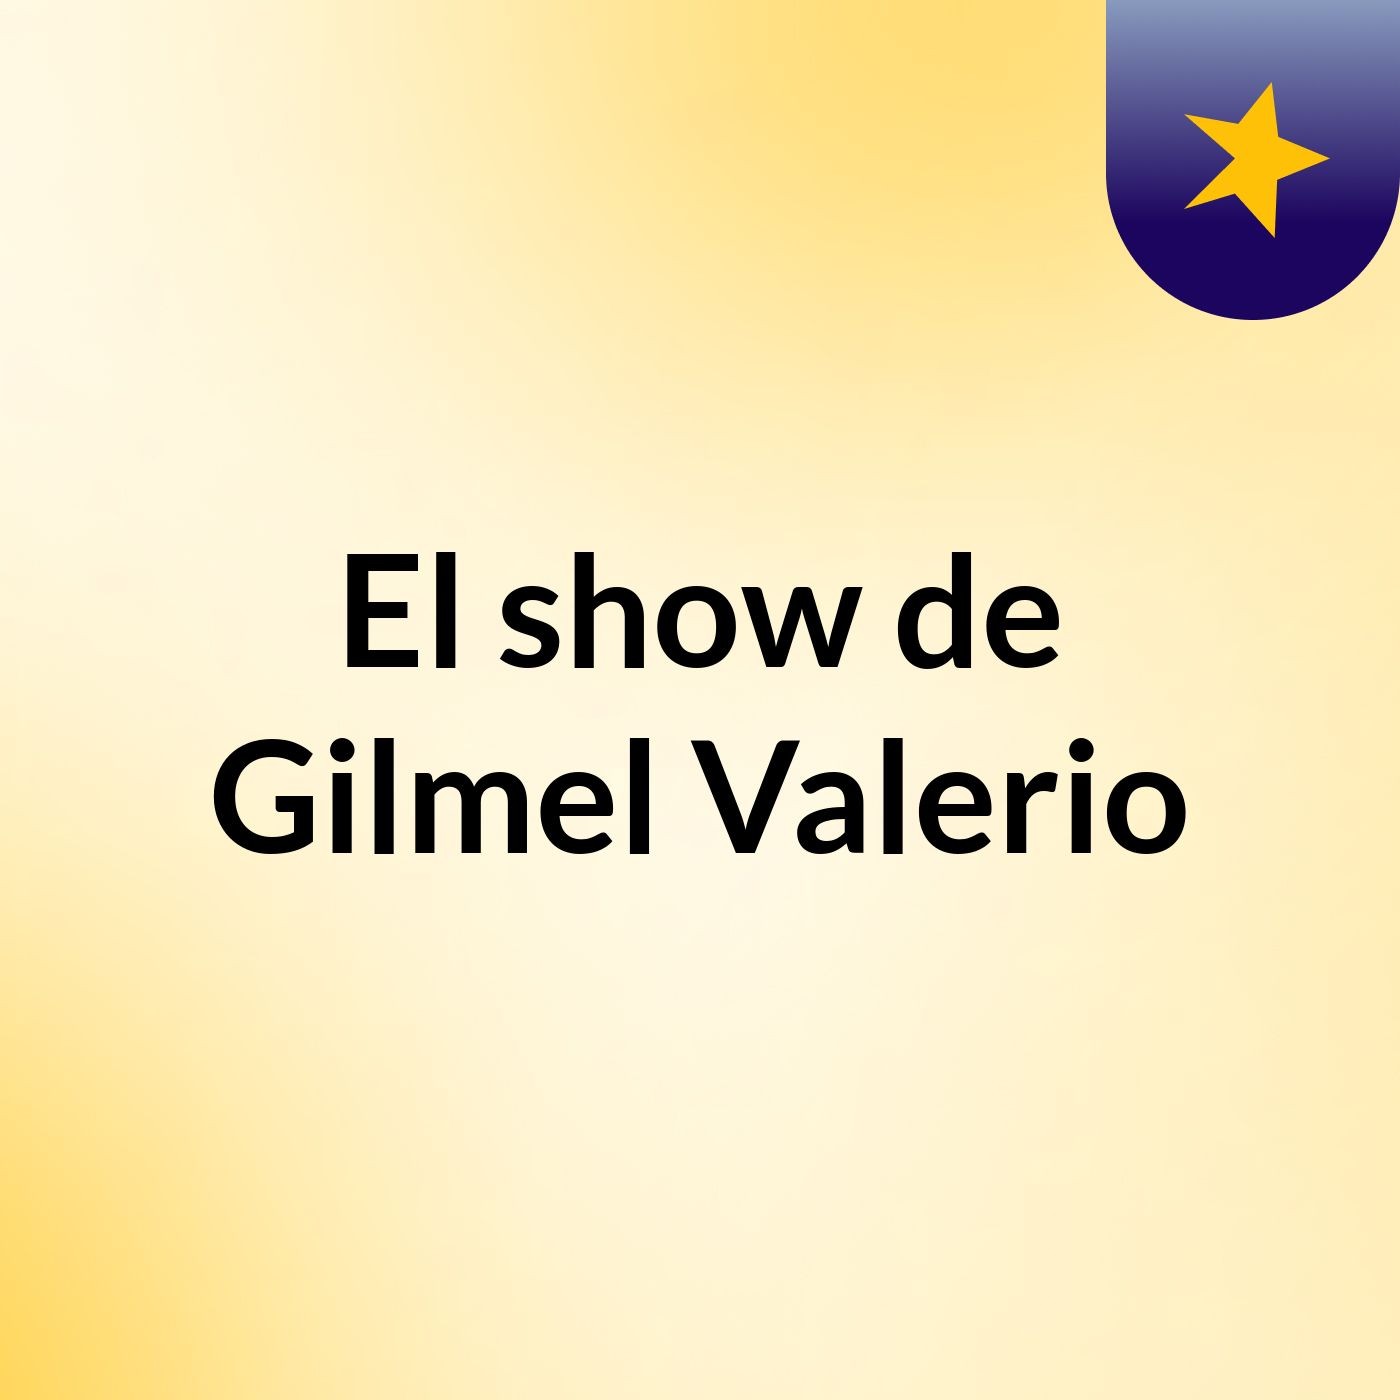 El show de Gilmel Valerio